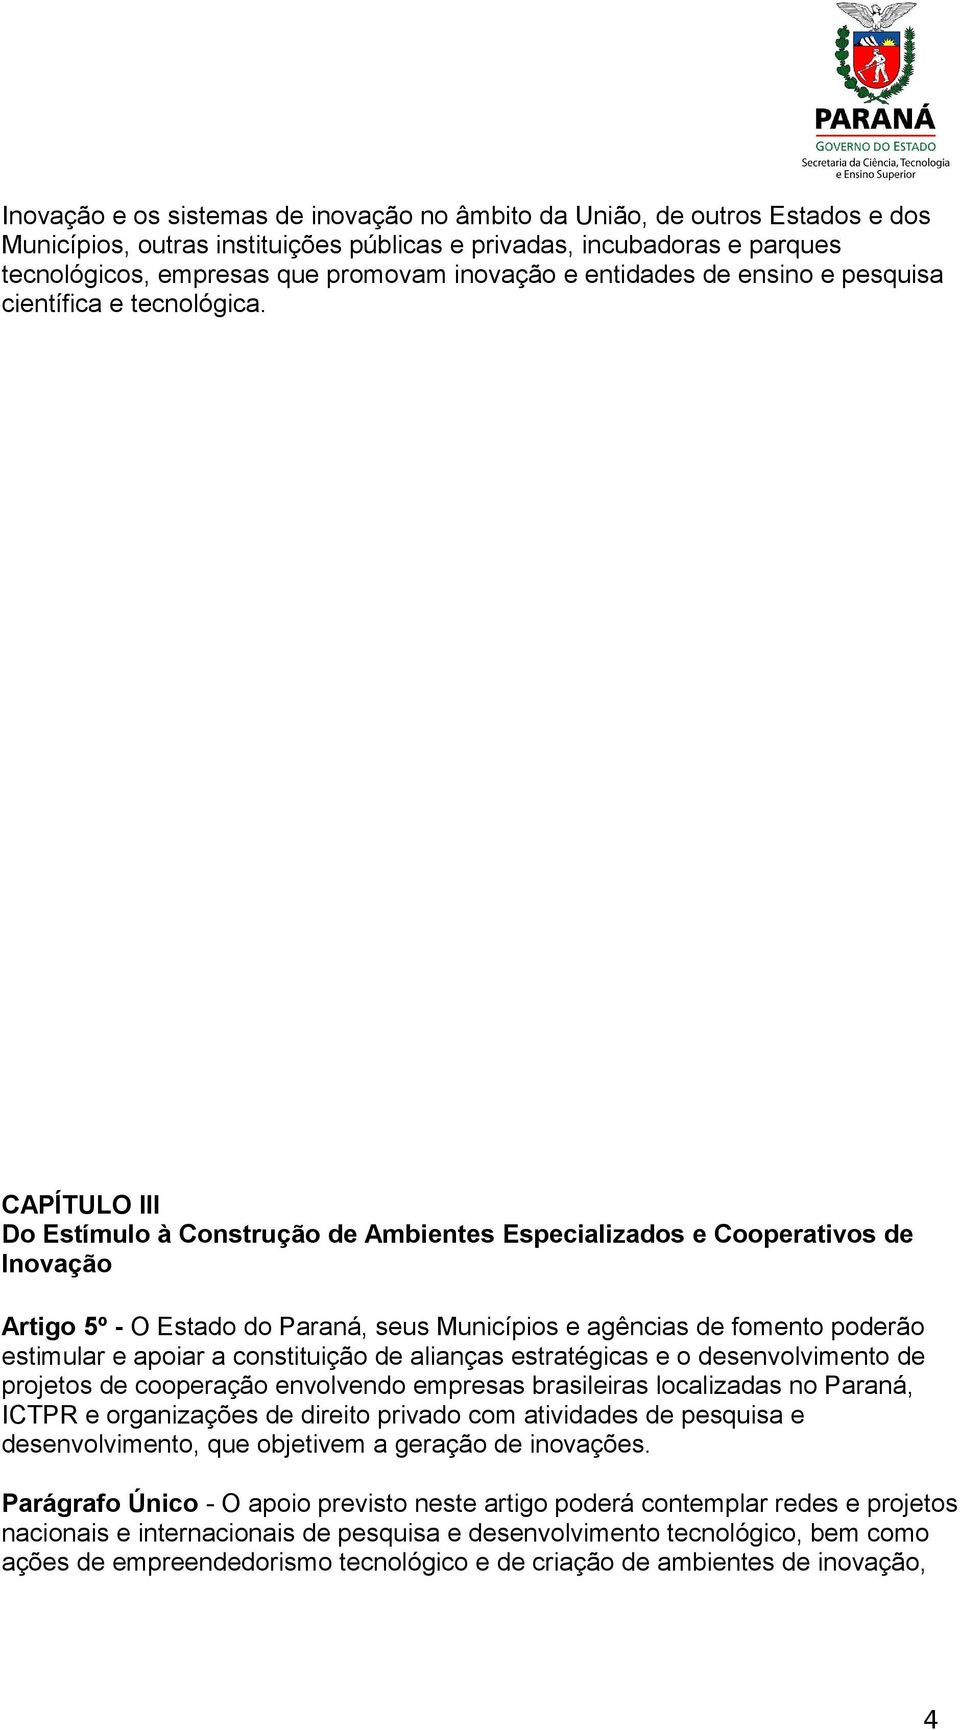 CAPÍTULO III Do Estímulo à Construção de Ambientes Especializados e Cooperativos de Inovação Artigo 5º - O Estado do Paraná, seus Municípios e agências de fomento poderão estimular e apoiar a